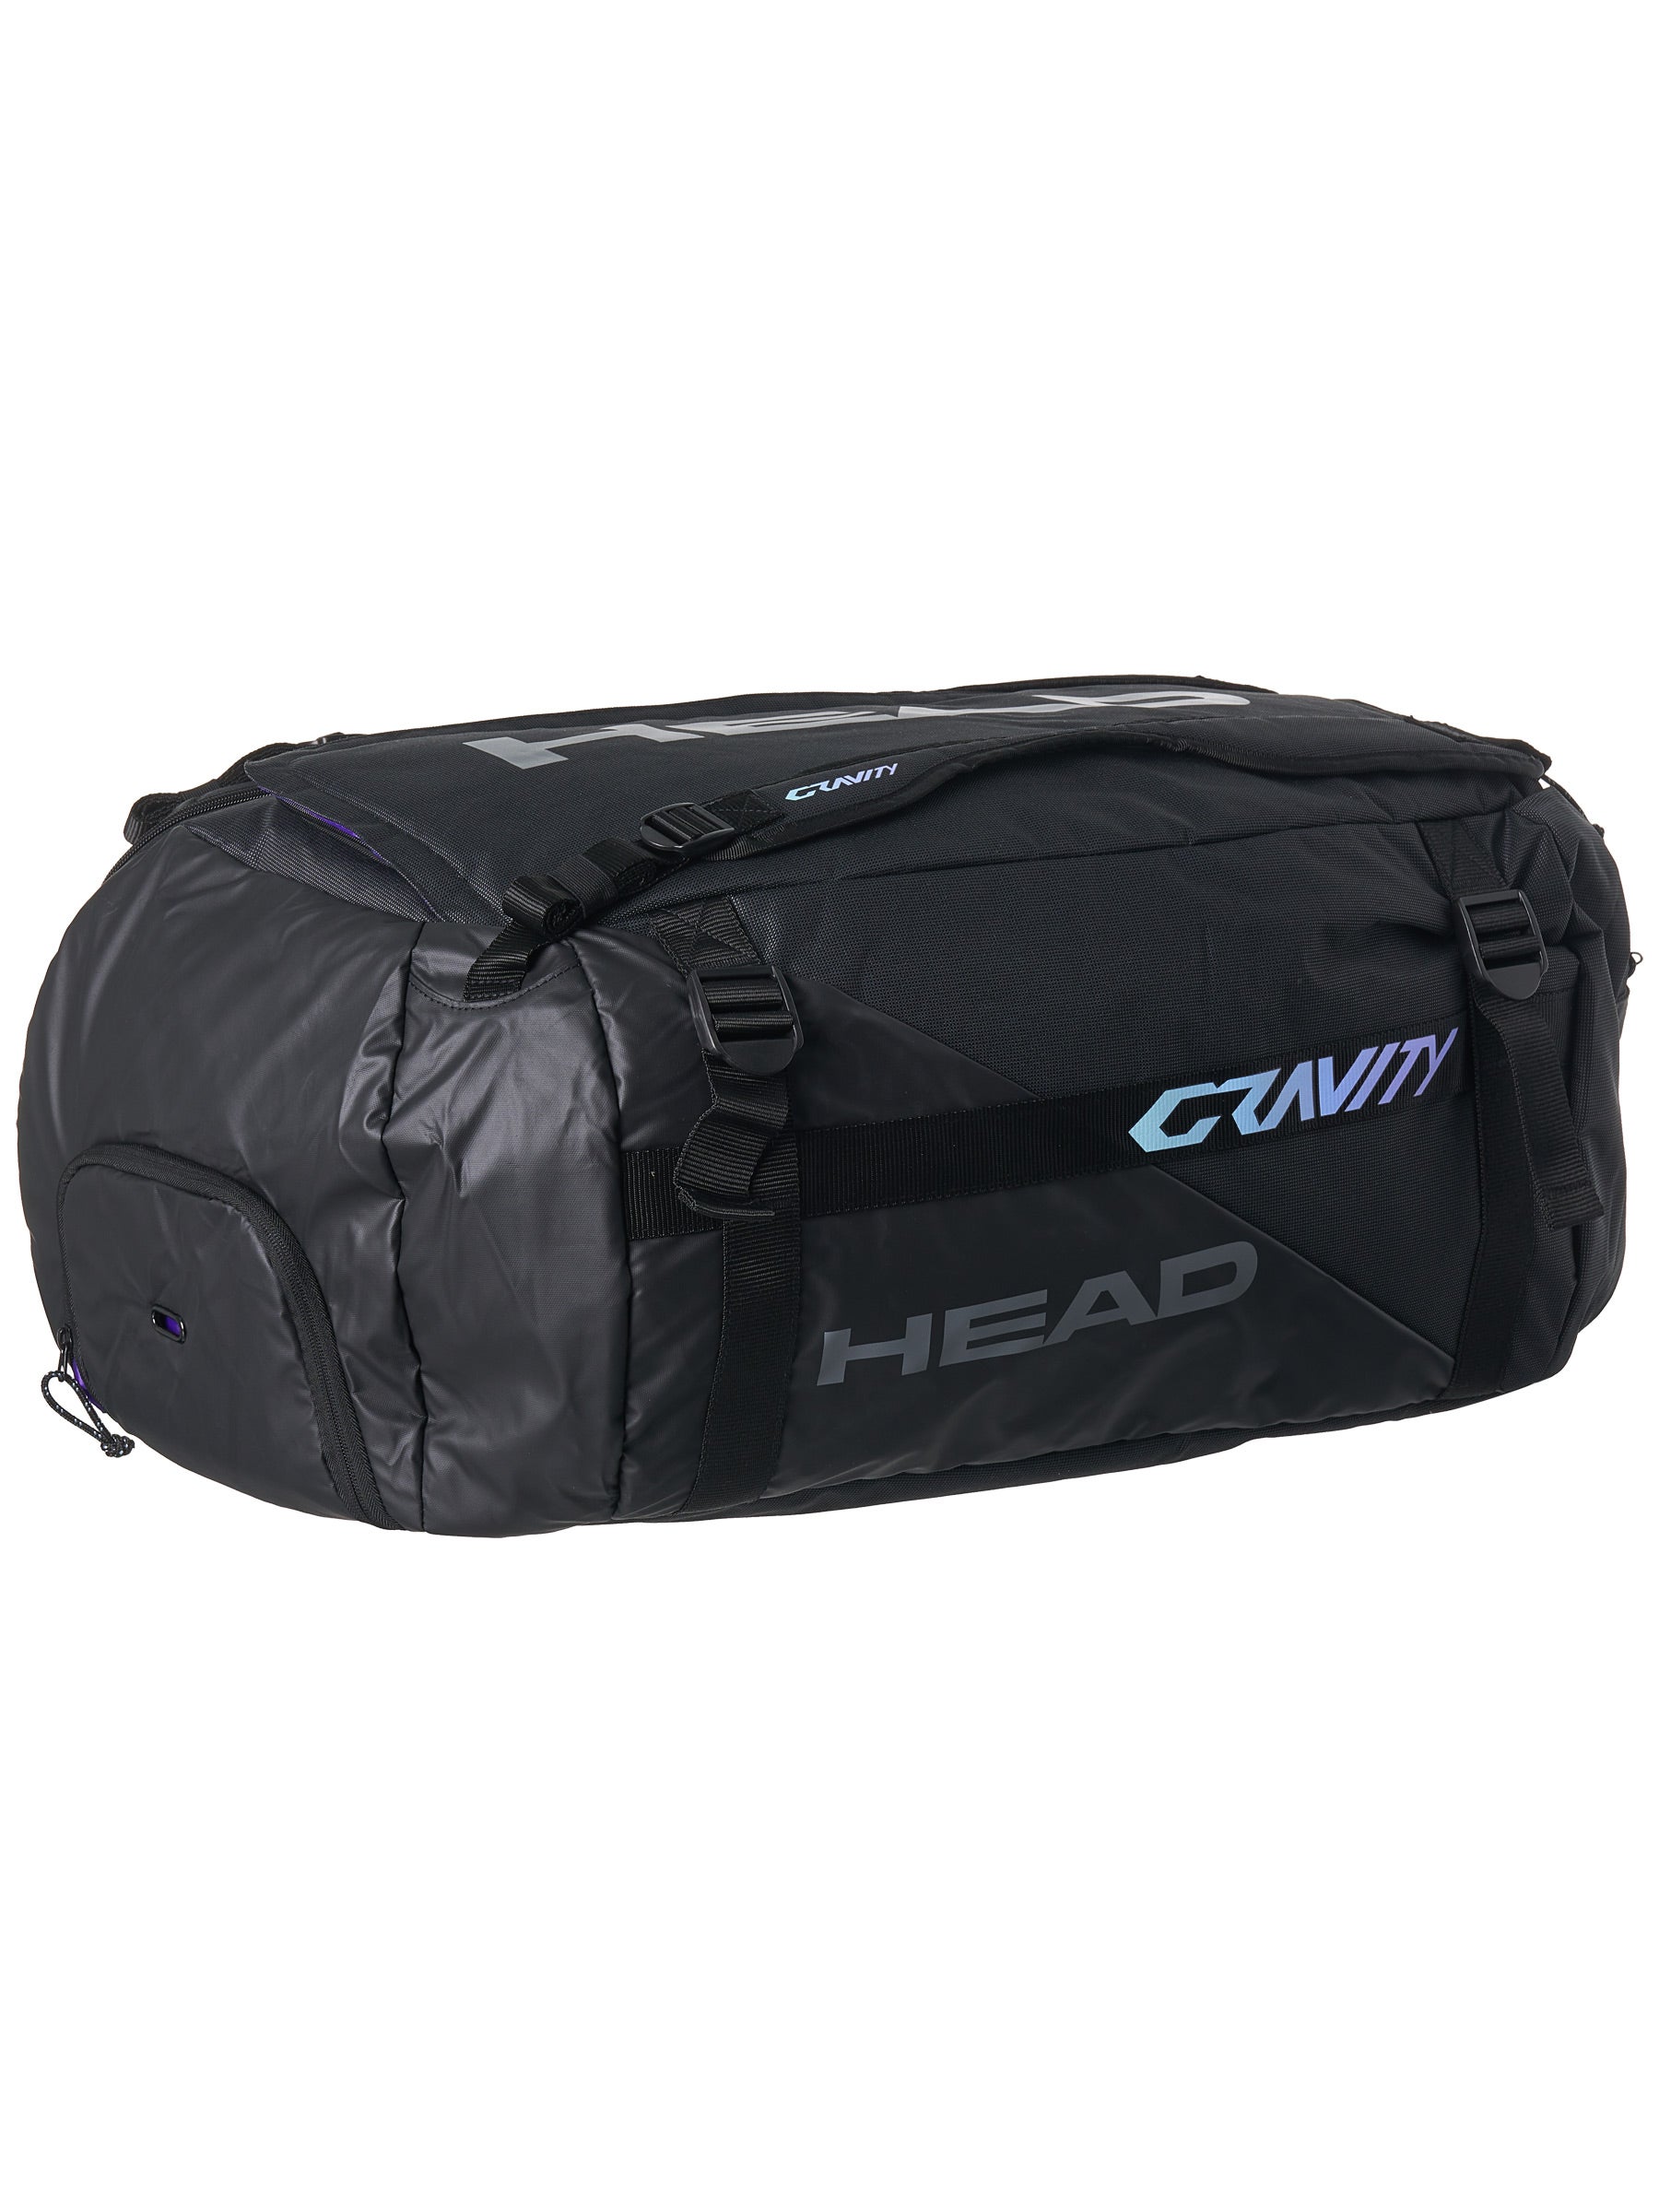 HEAD Gravity 12R Duffle Tennis Racquet Bag 